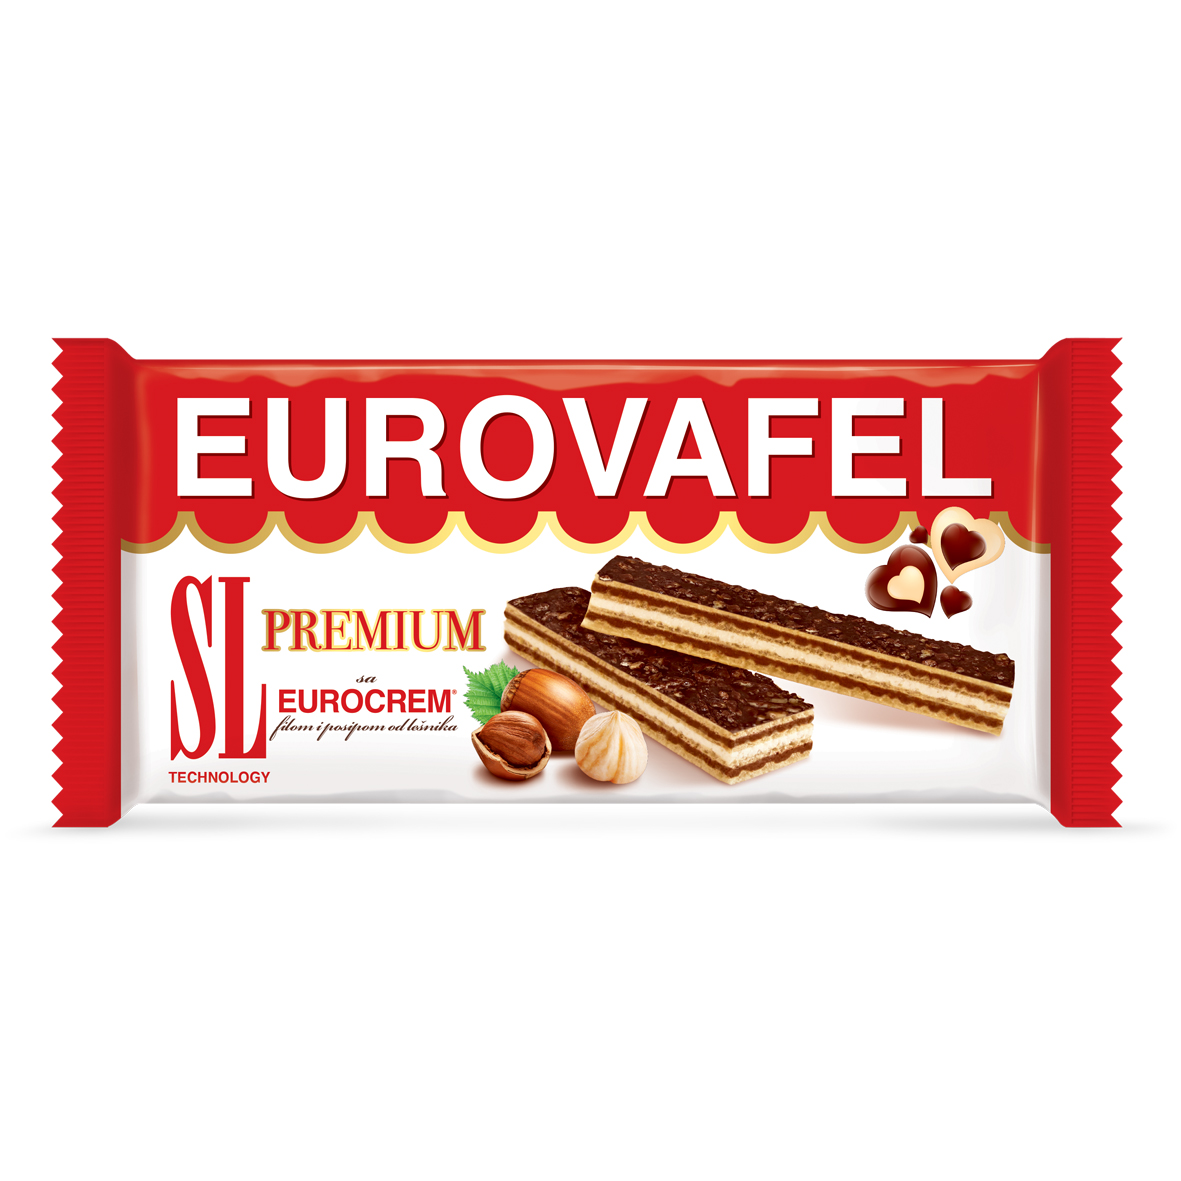 Eurovafel Premium 100g